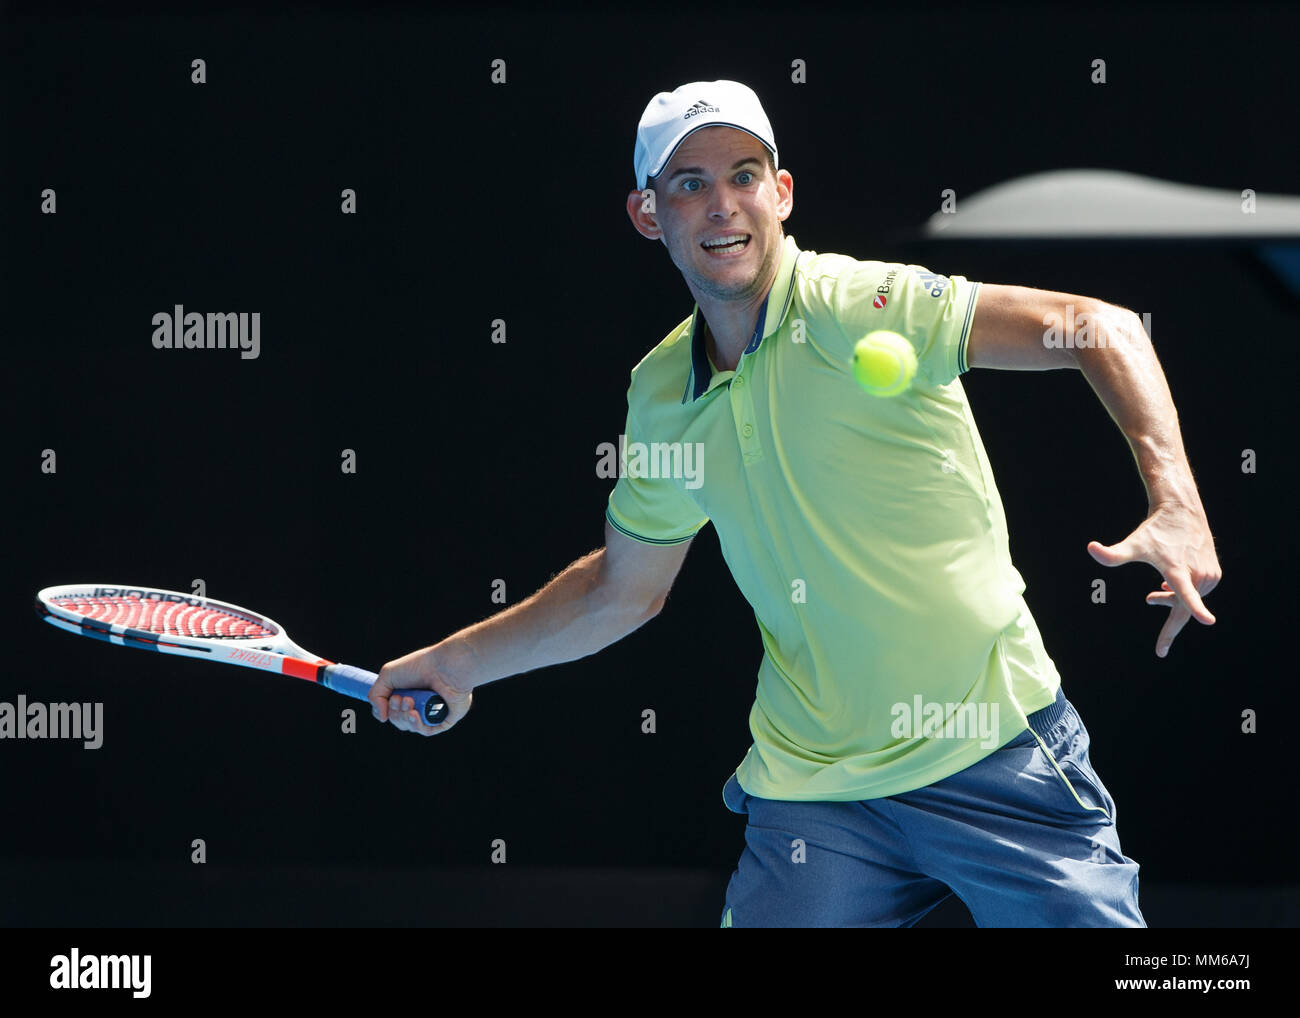 Austrian giocatore di tennis Dominic Thiem giocando diretti shot in Australian Open 2018 Torneo di Tennis, Melbourne Park, Melbourne, Victoria, Australia. Foto Stock